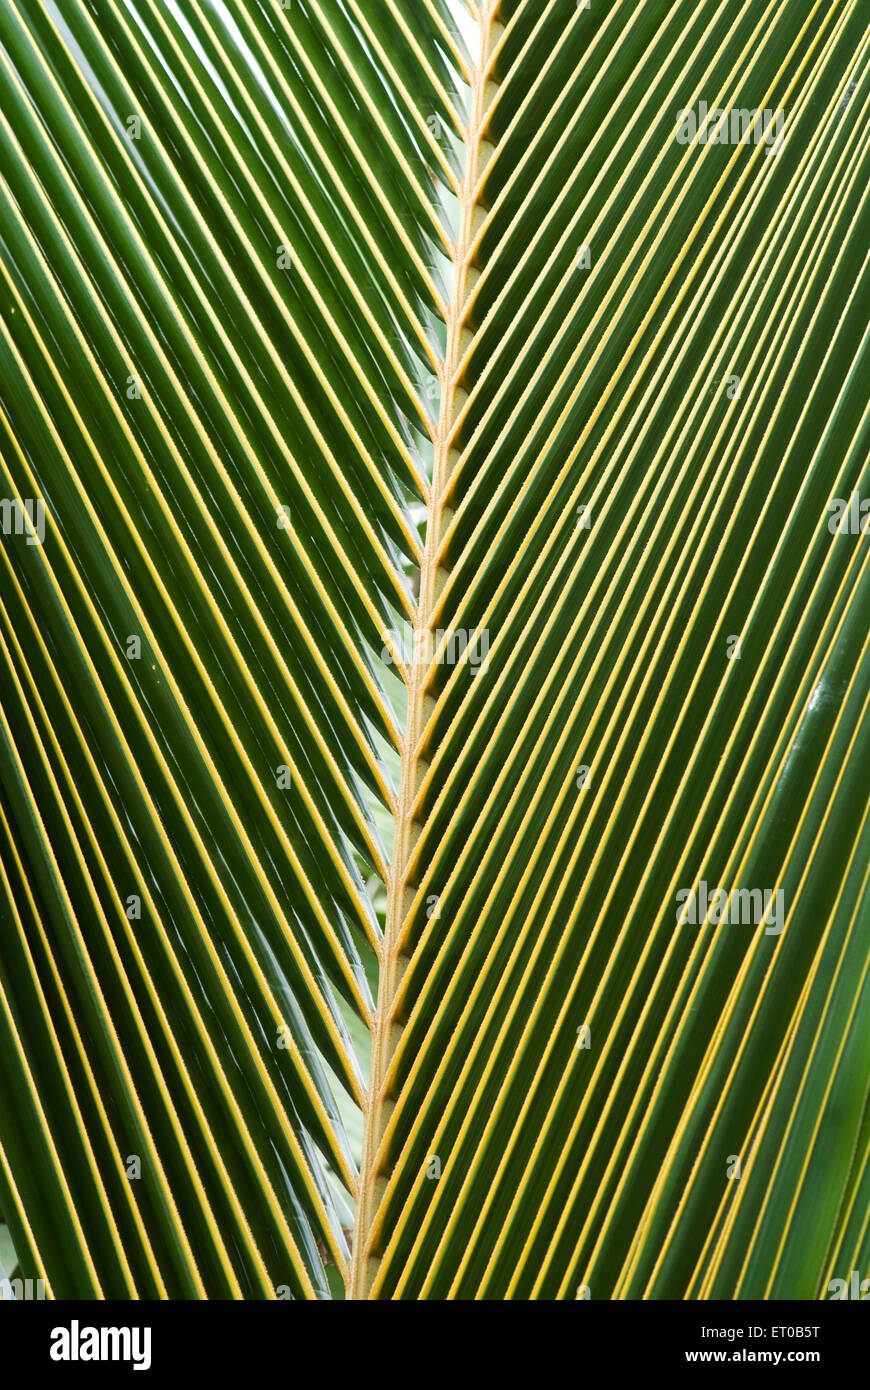 Foglia di palma, foglia di cocco, kerala, India, asia Foto Stock